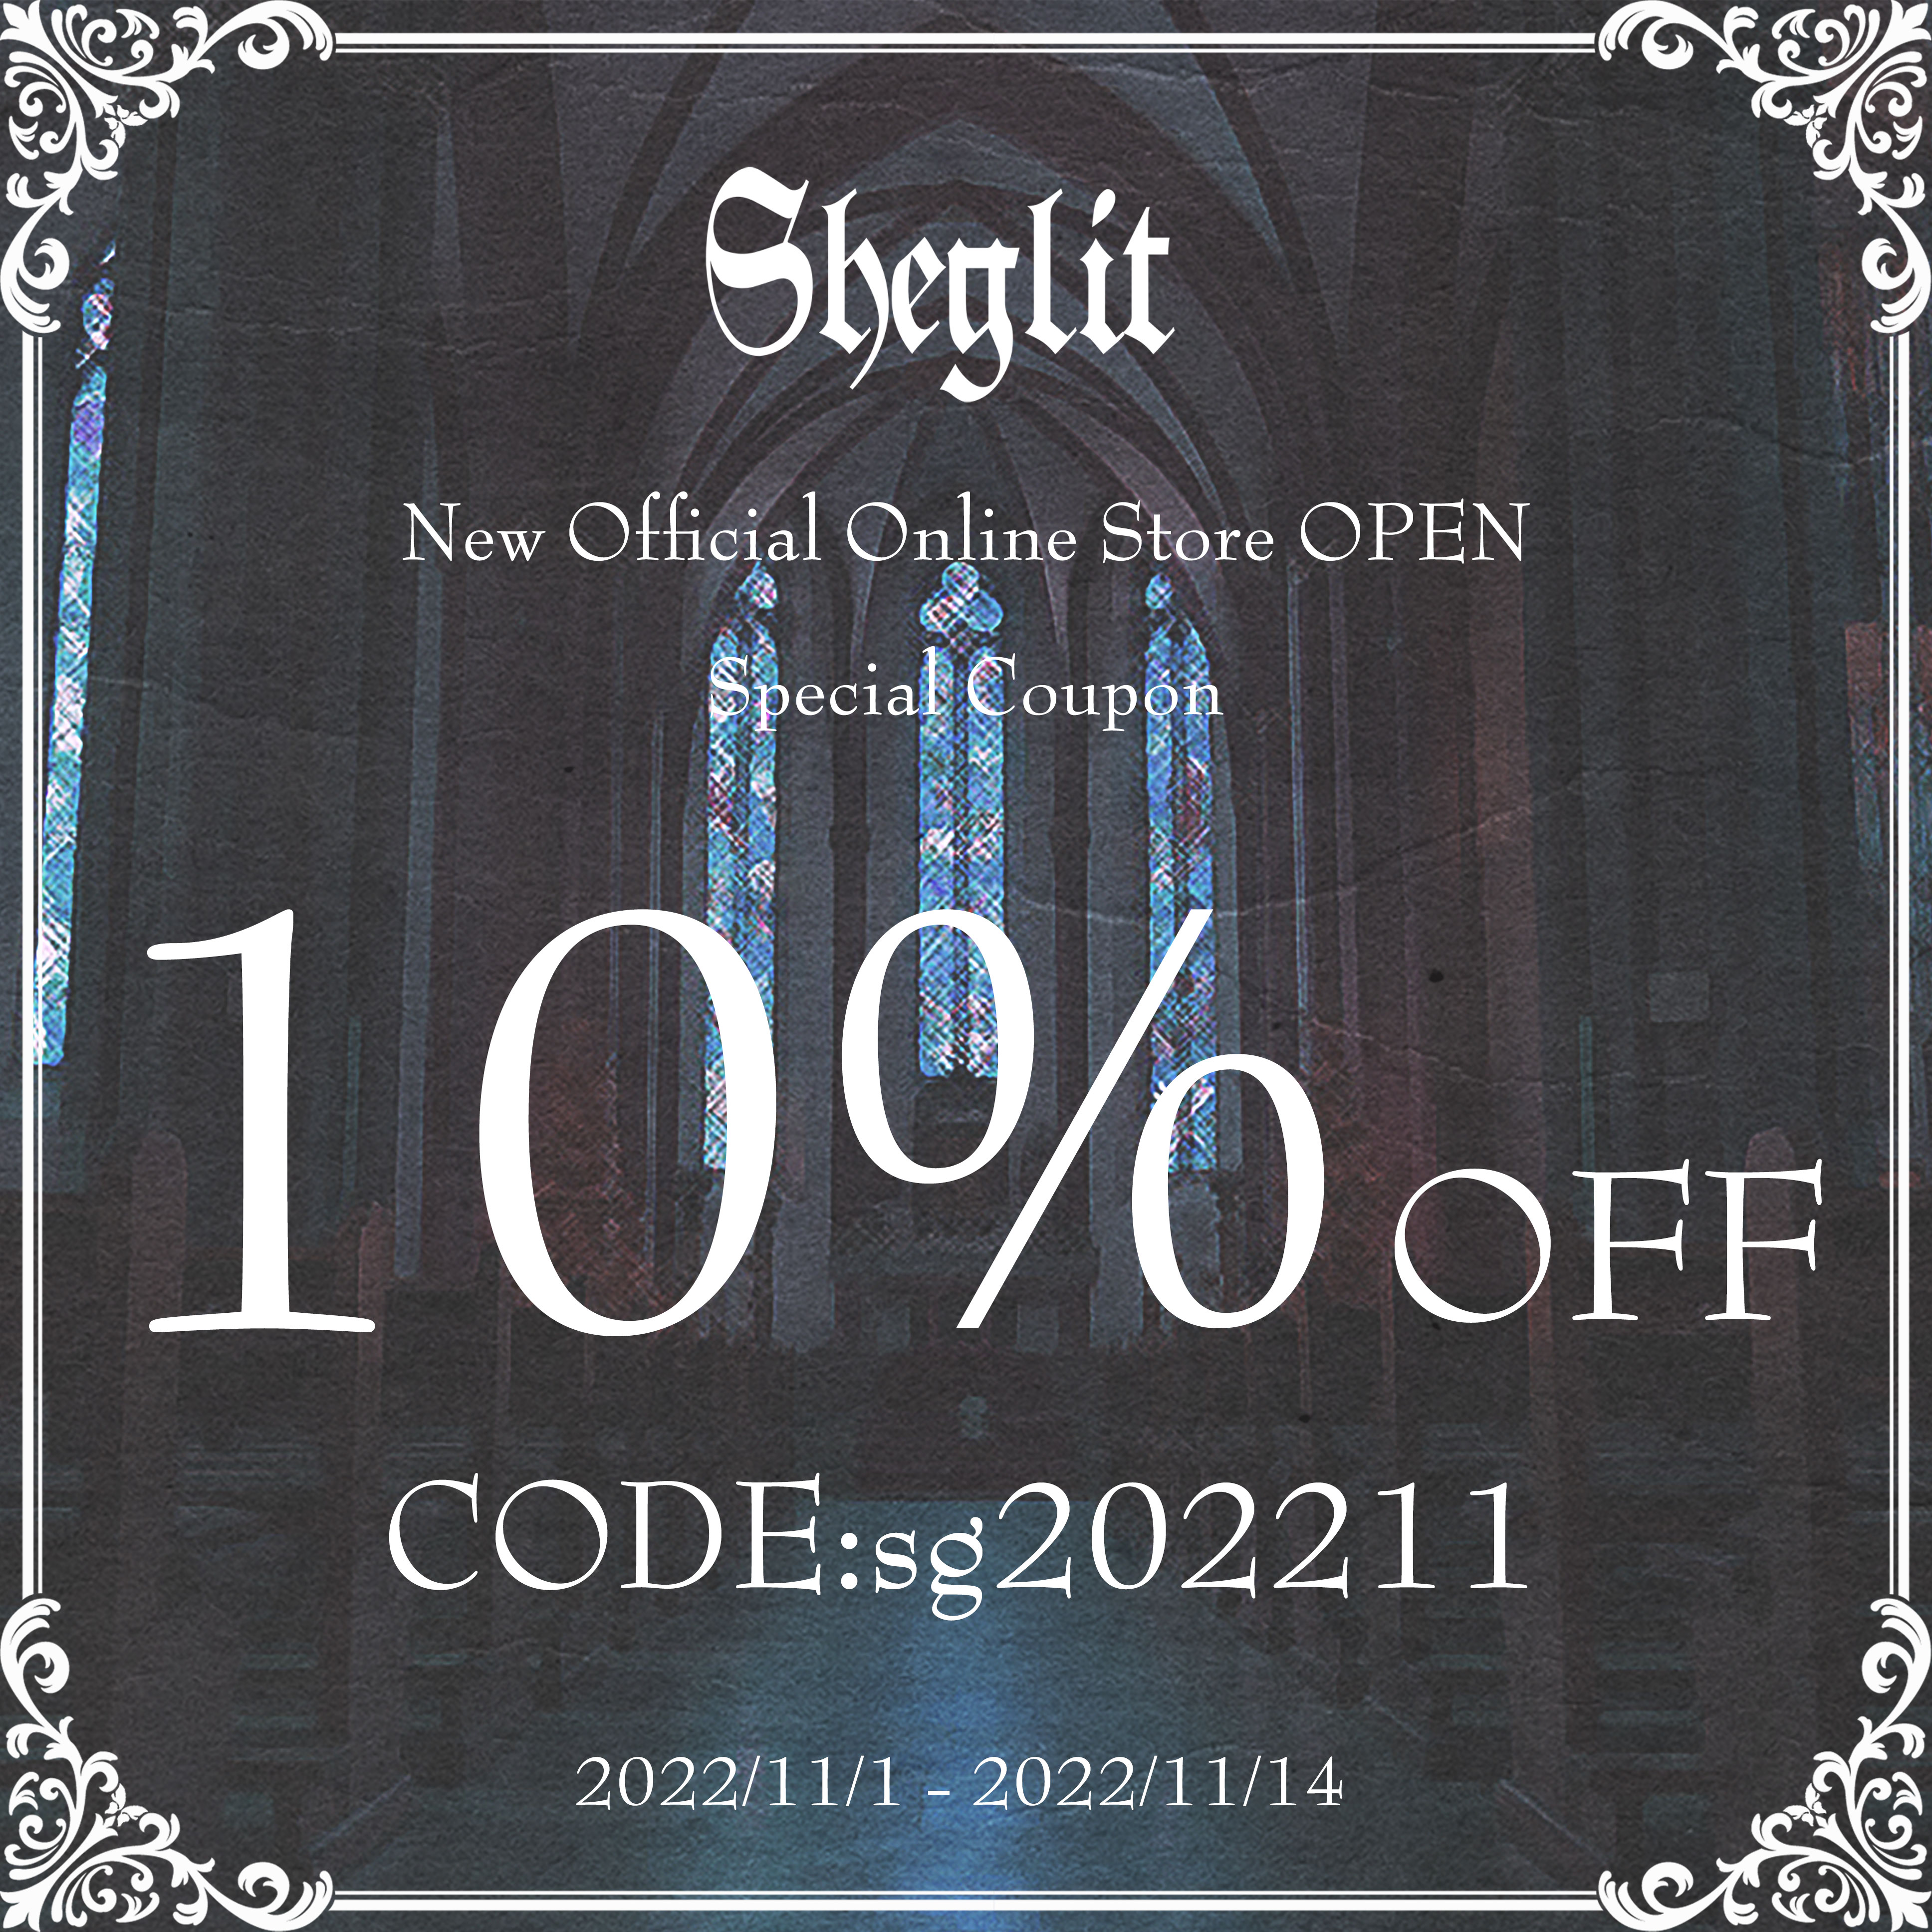 ●New Sheglit Online Storeオープン記念クーポン配布●